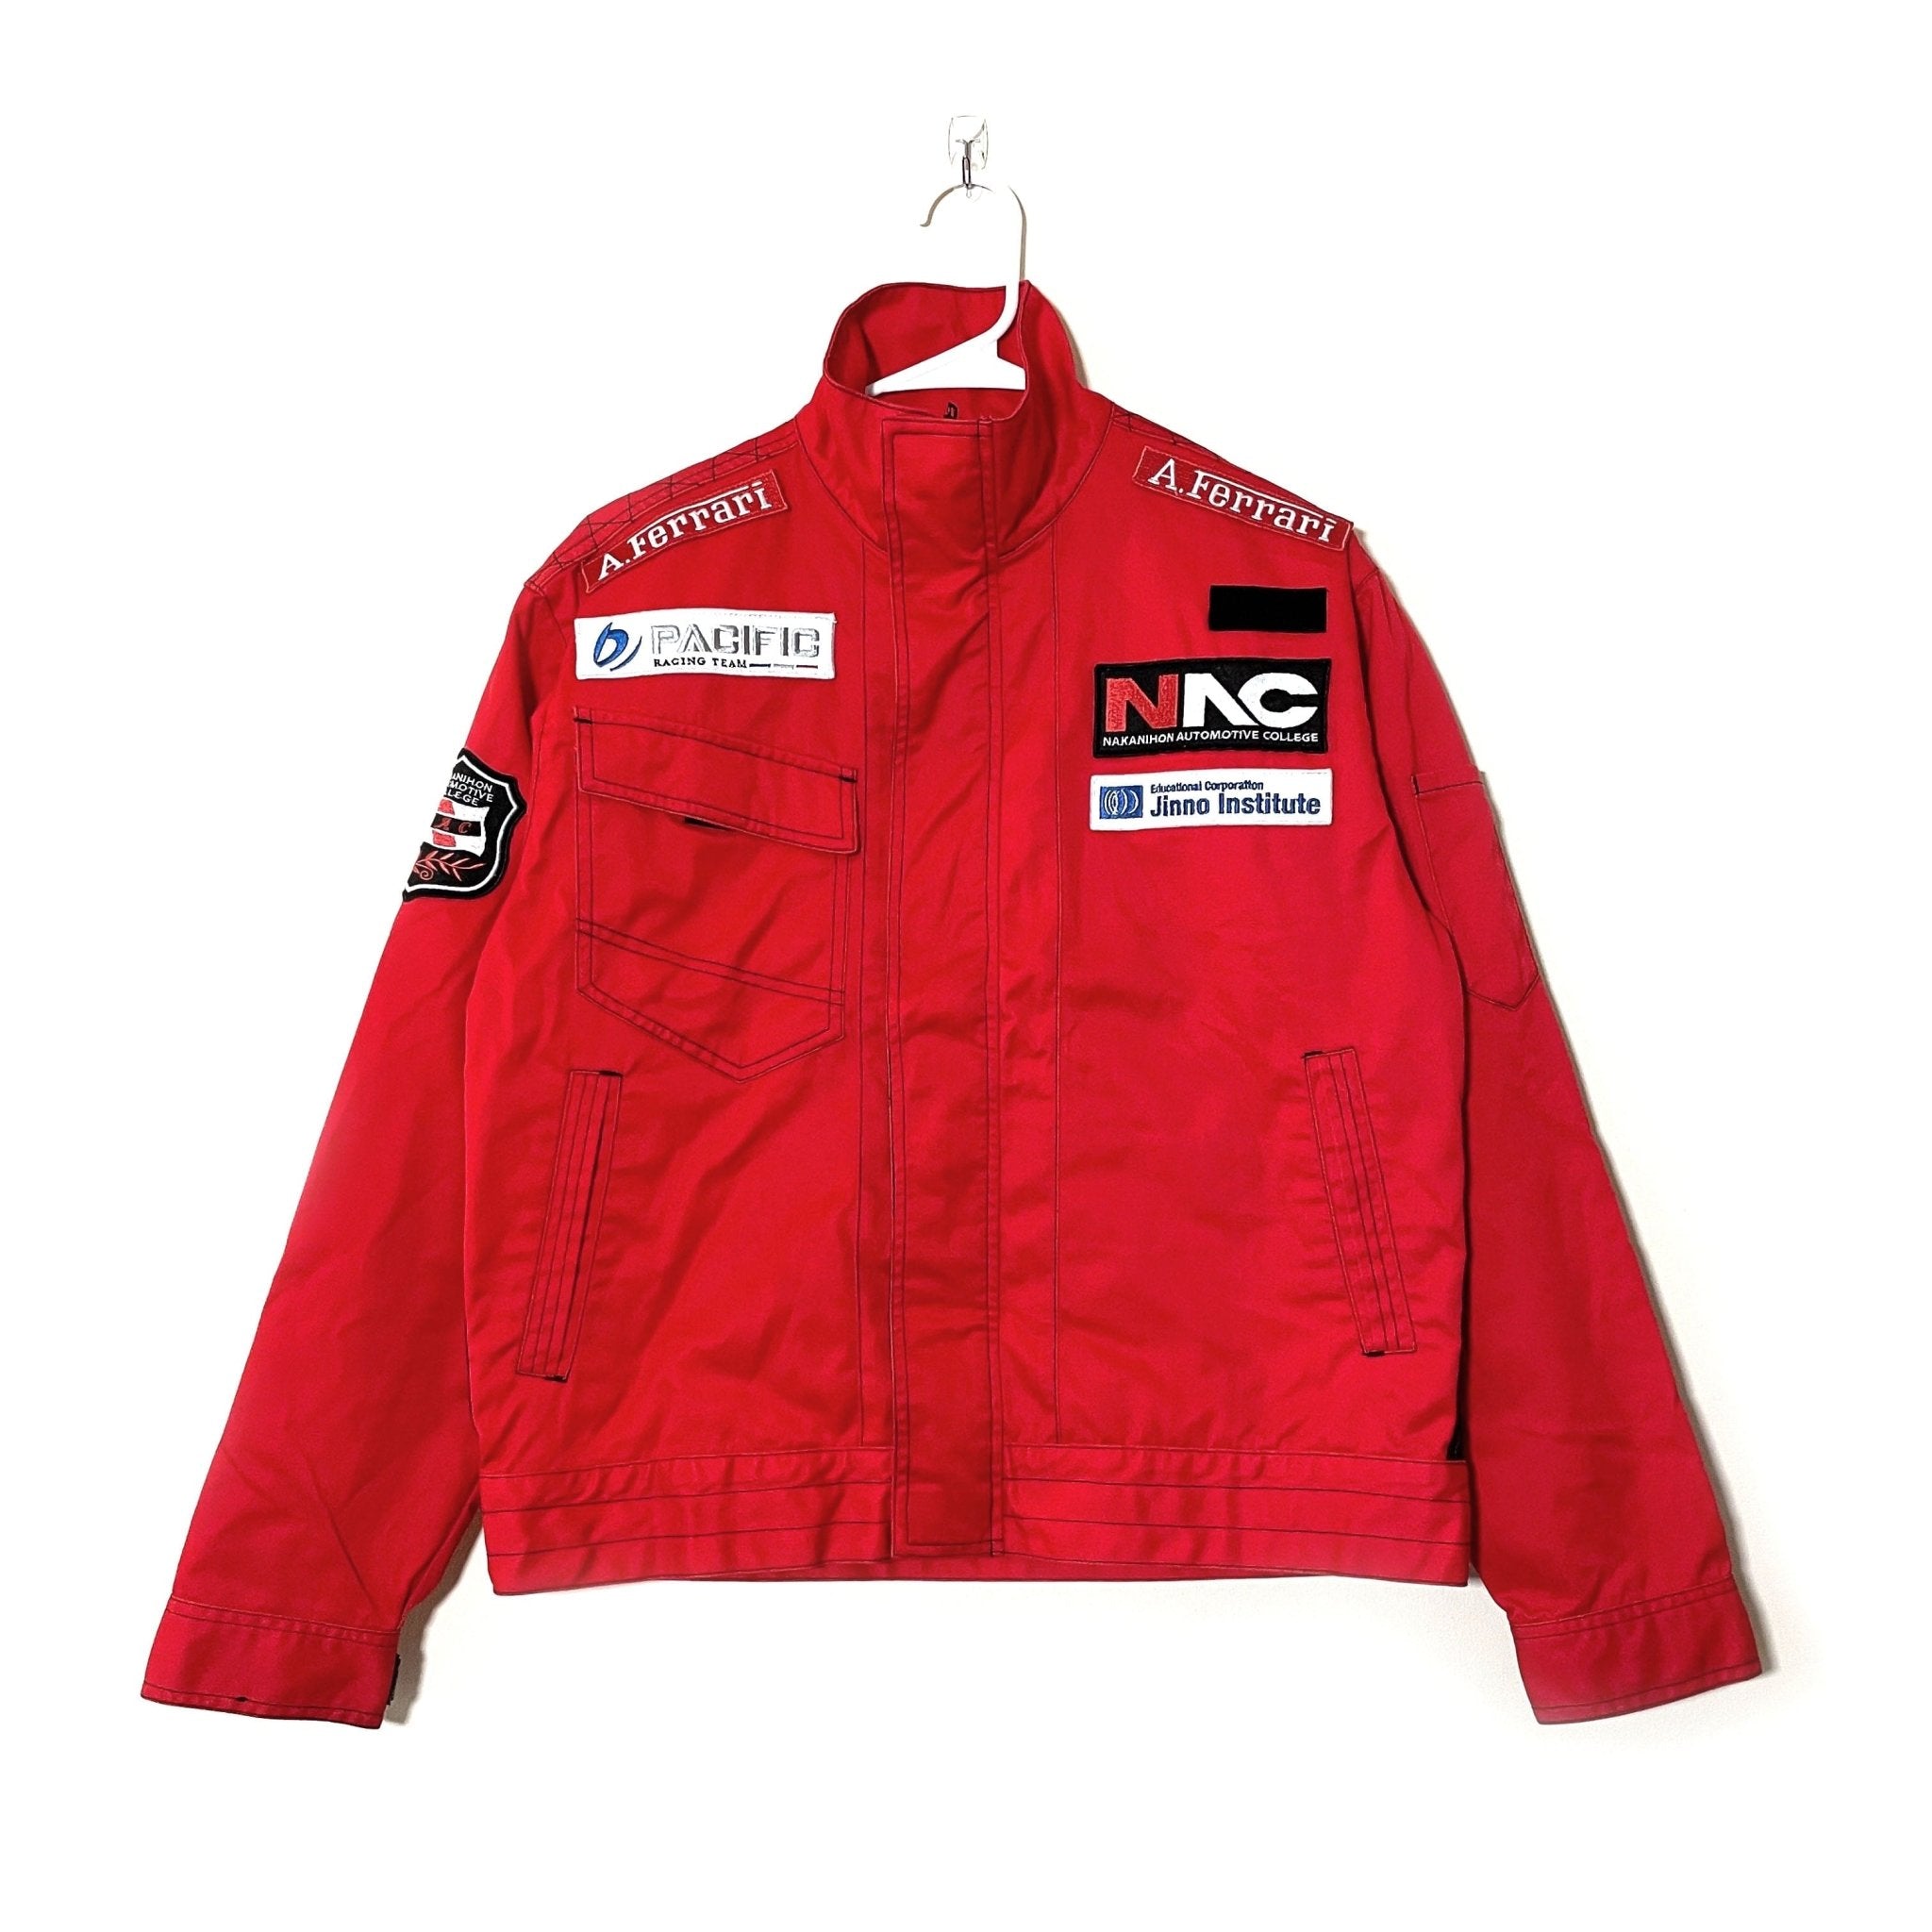 VTG FERRARI RACING Jacket Red Marlboro Formula 1 $200.00 - PicClick